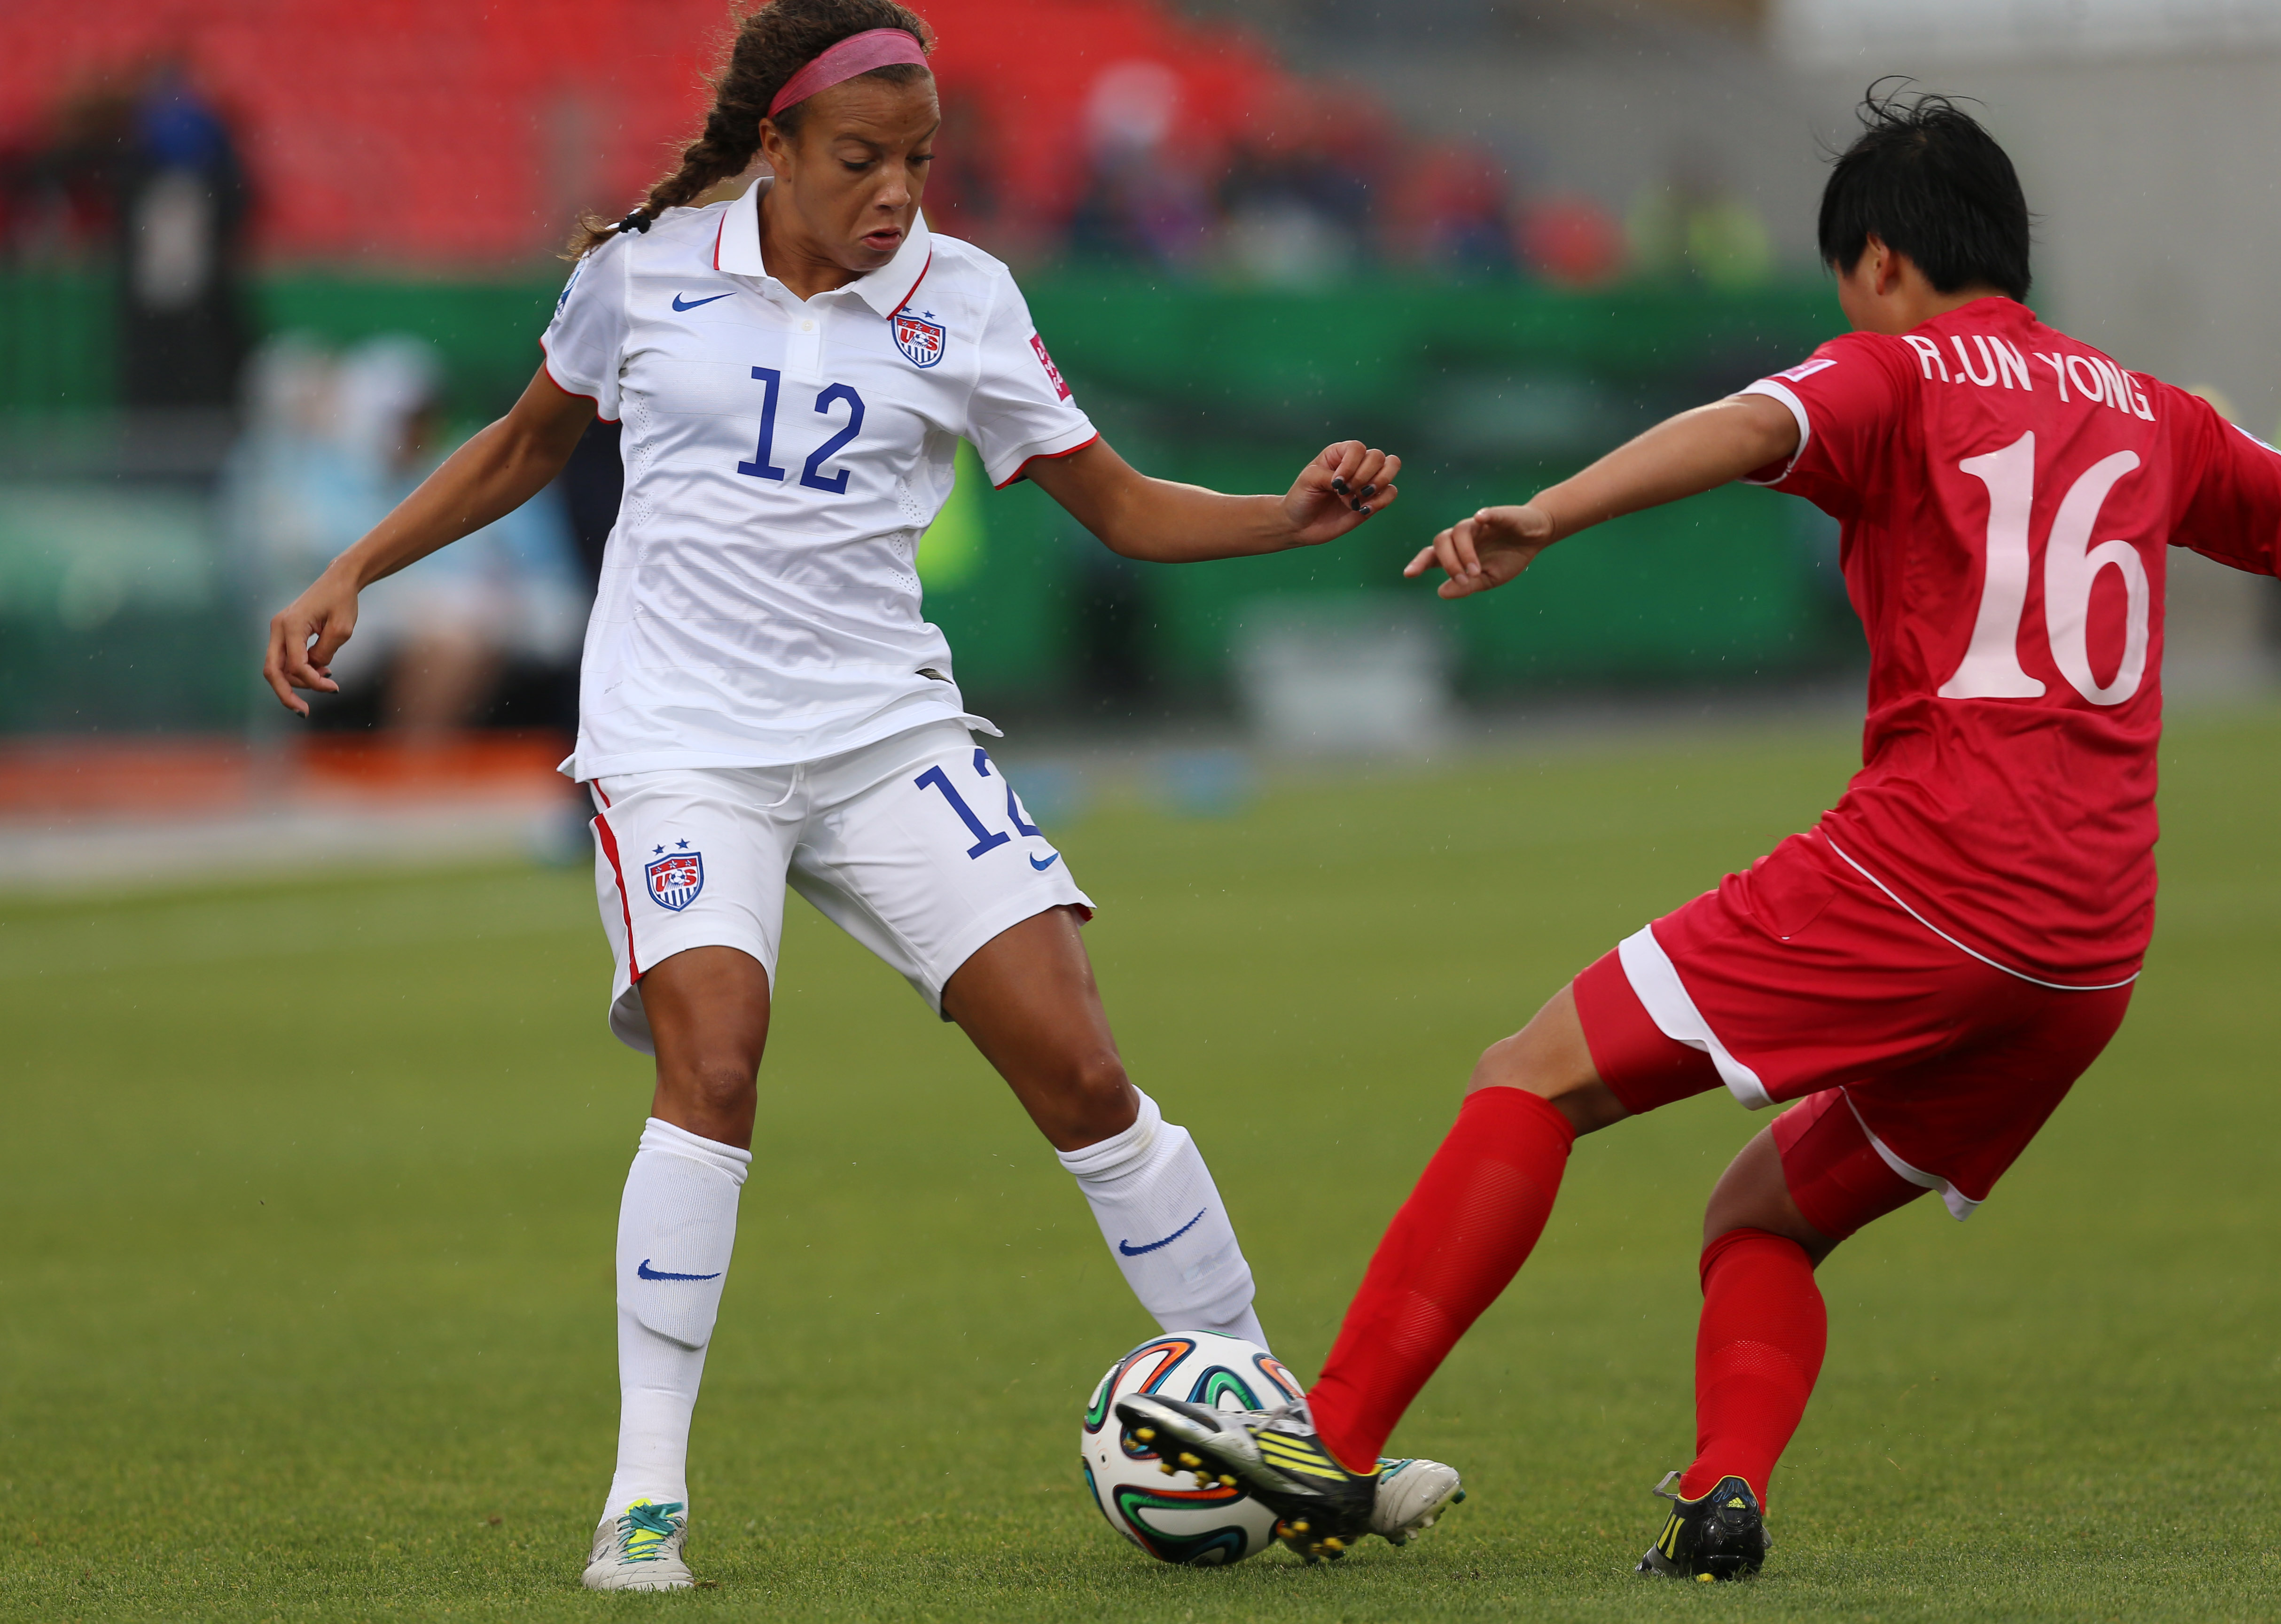 Korea DPR v USA: Quarter Final - FIFA U-20 Women's World Cup Canada 2014